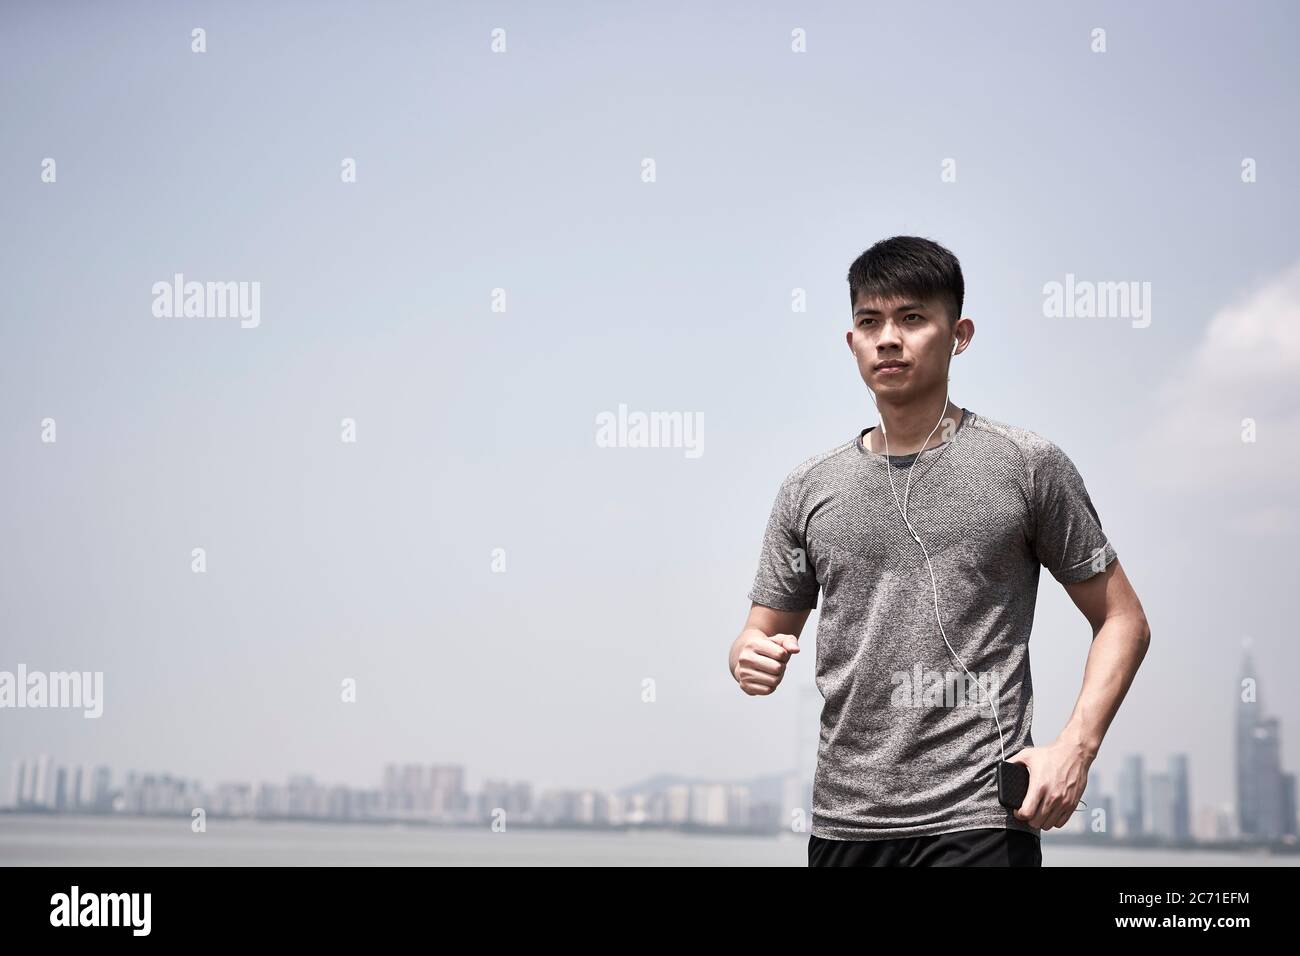 Junge asiatische Erwachsene Mann bereit, joggen im Freien am Meer laufen Stockfoto